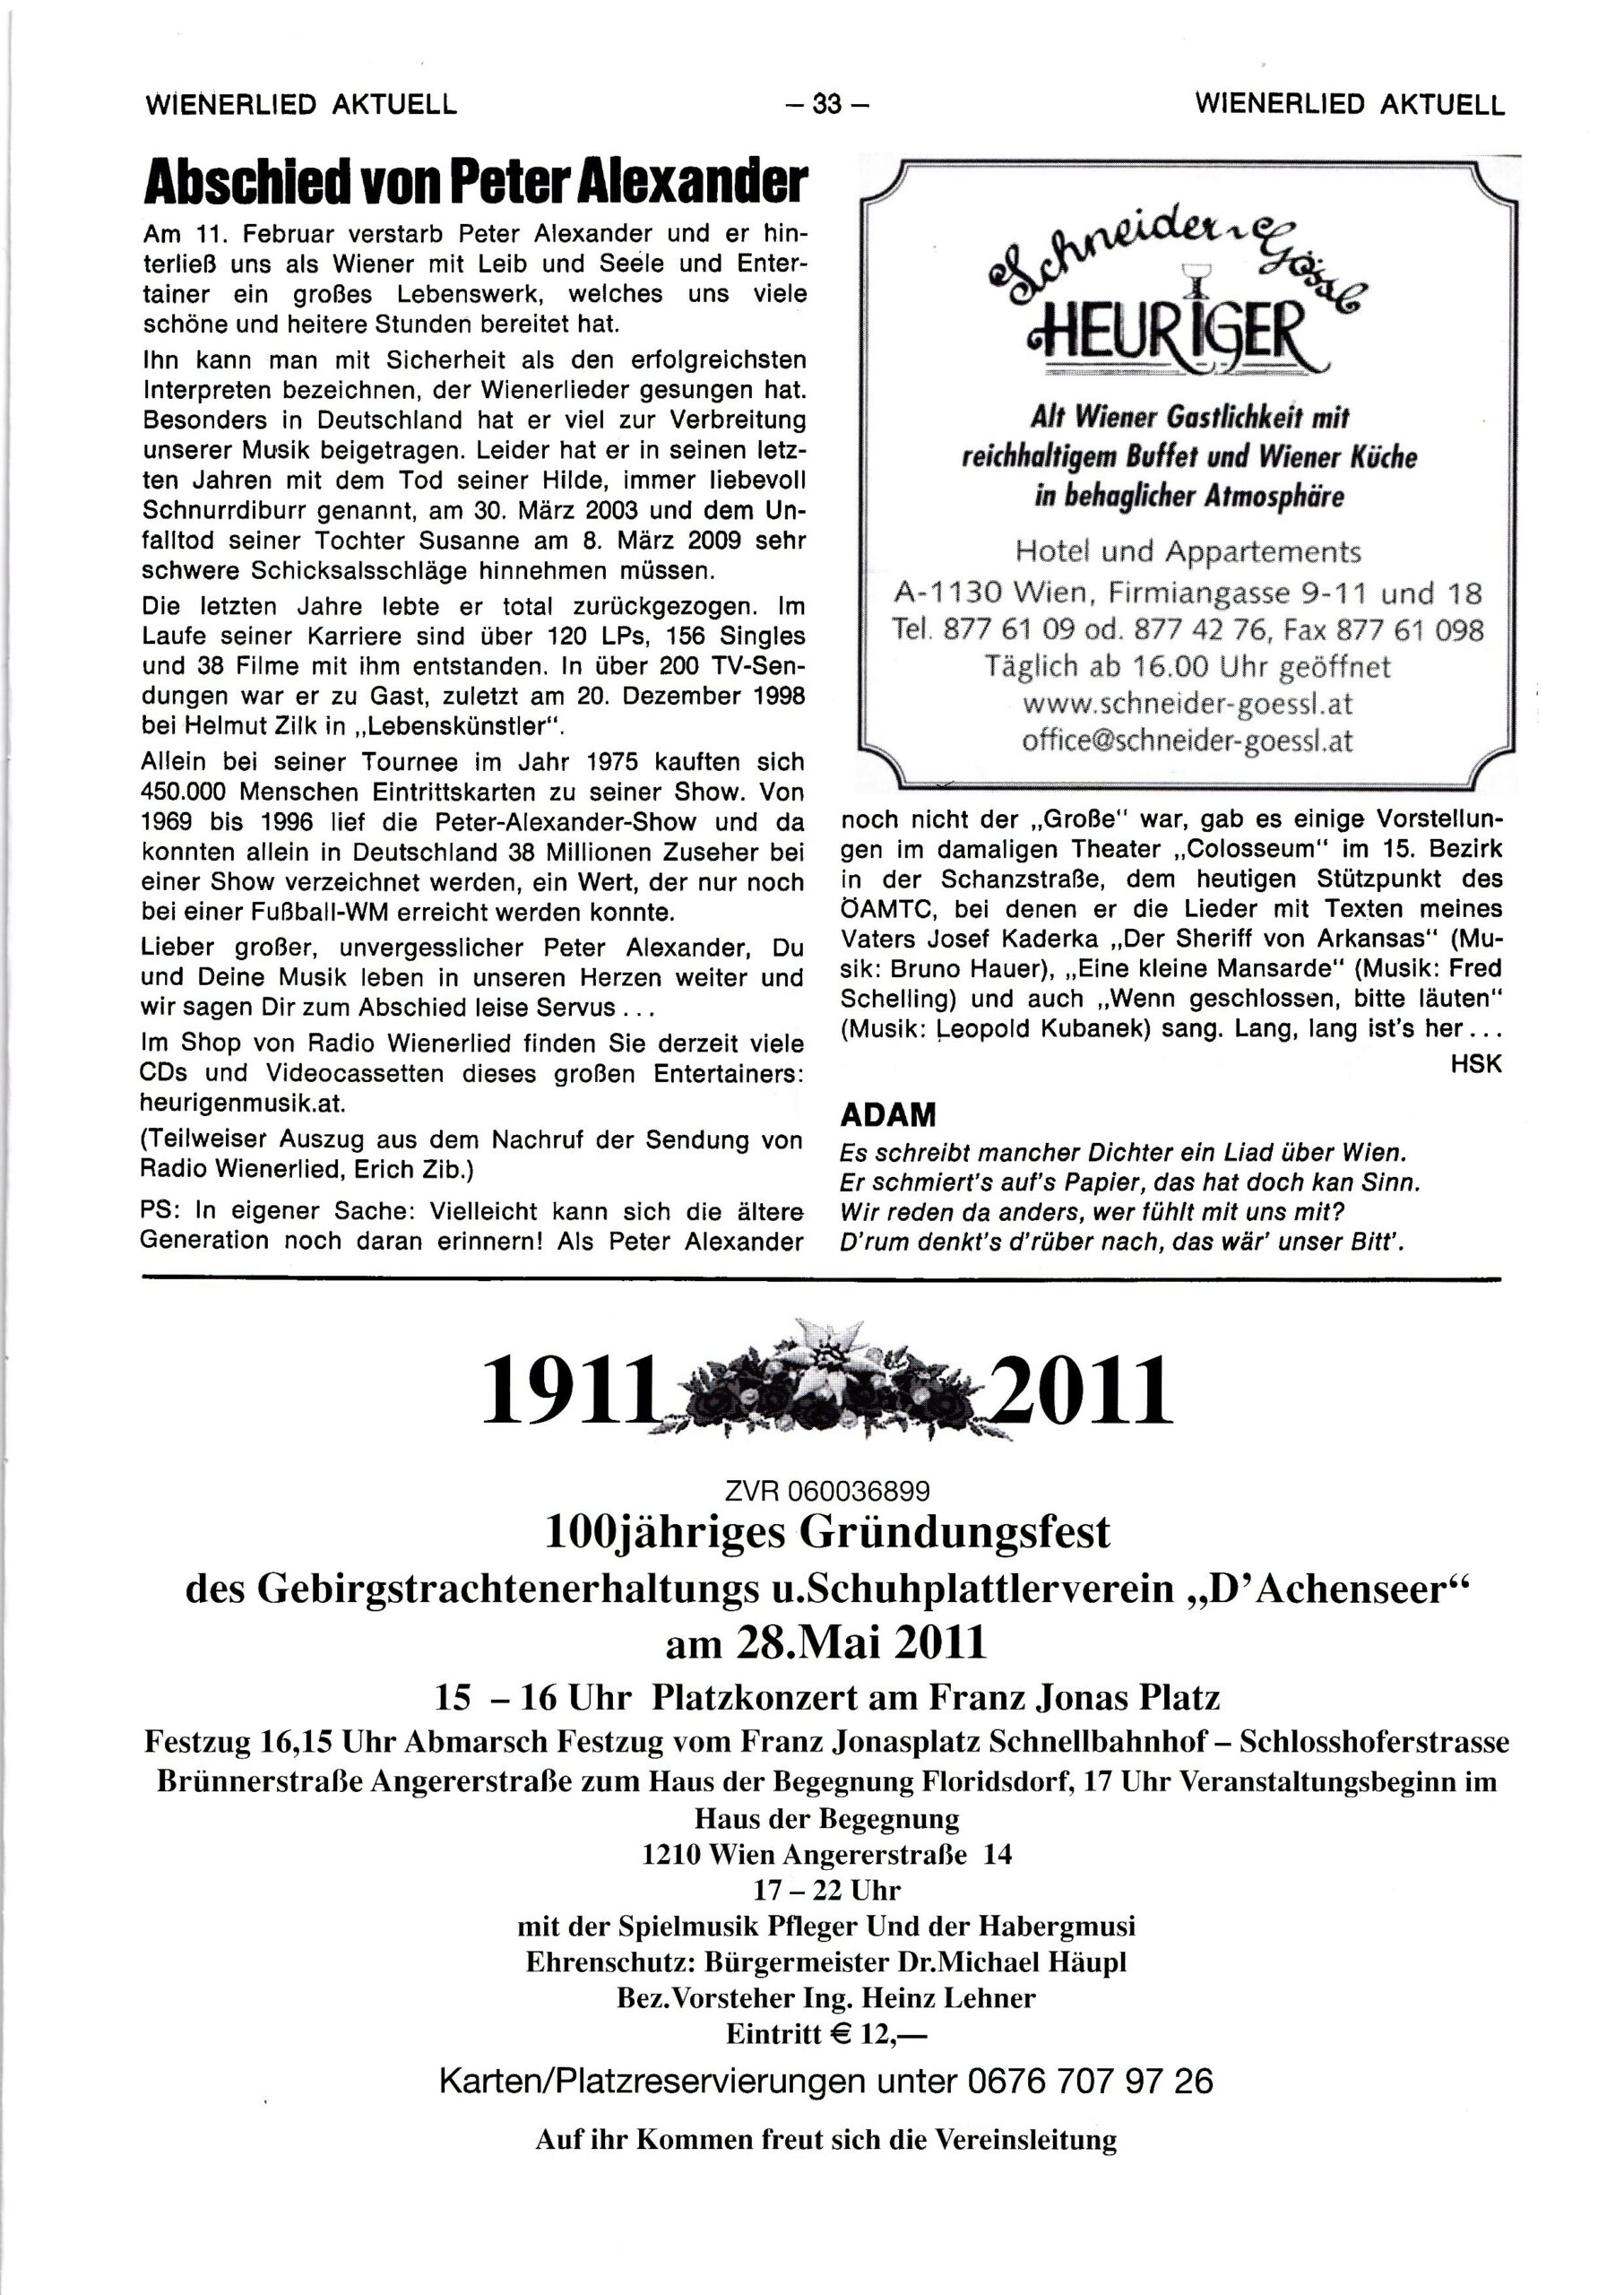 Wienerlied aktuell 2011, Heft 75, Seite 33